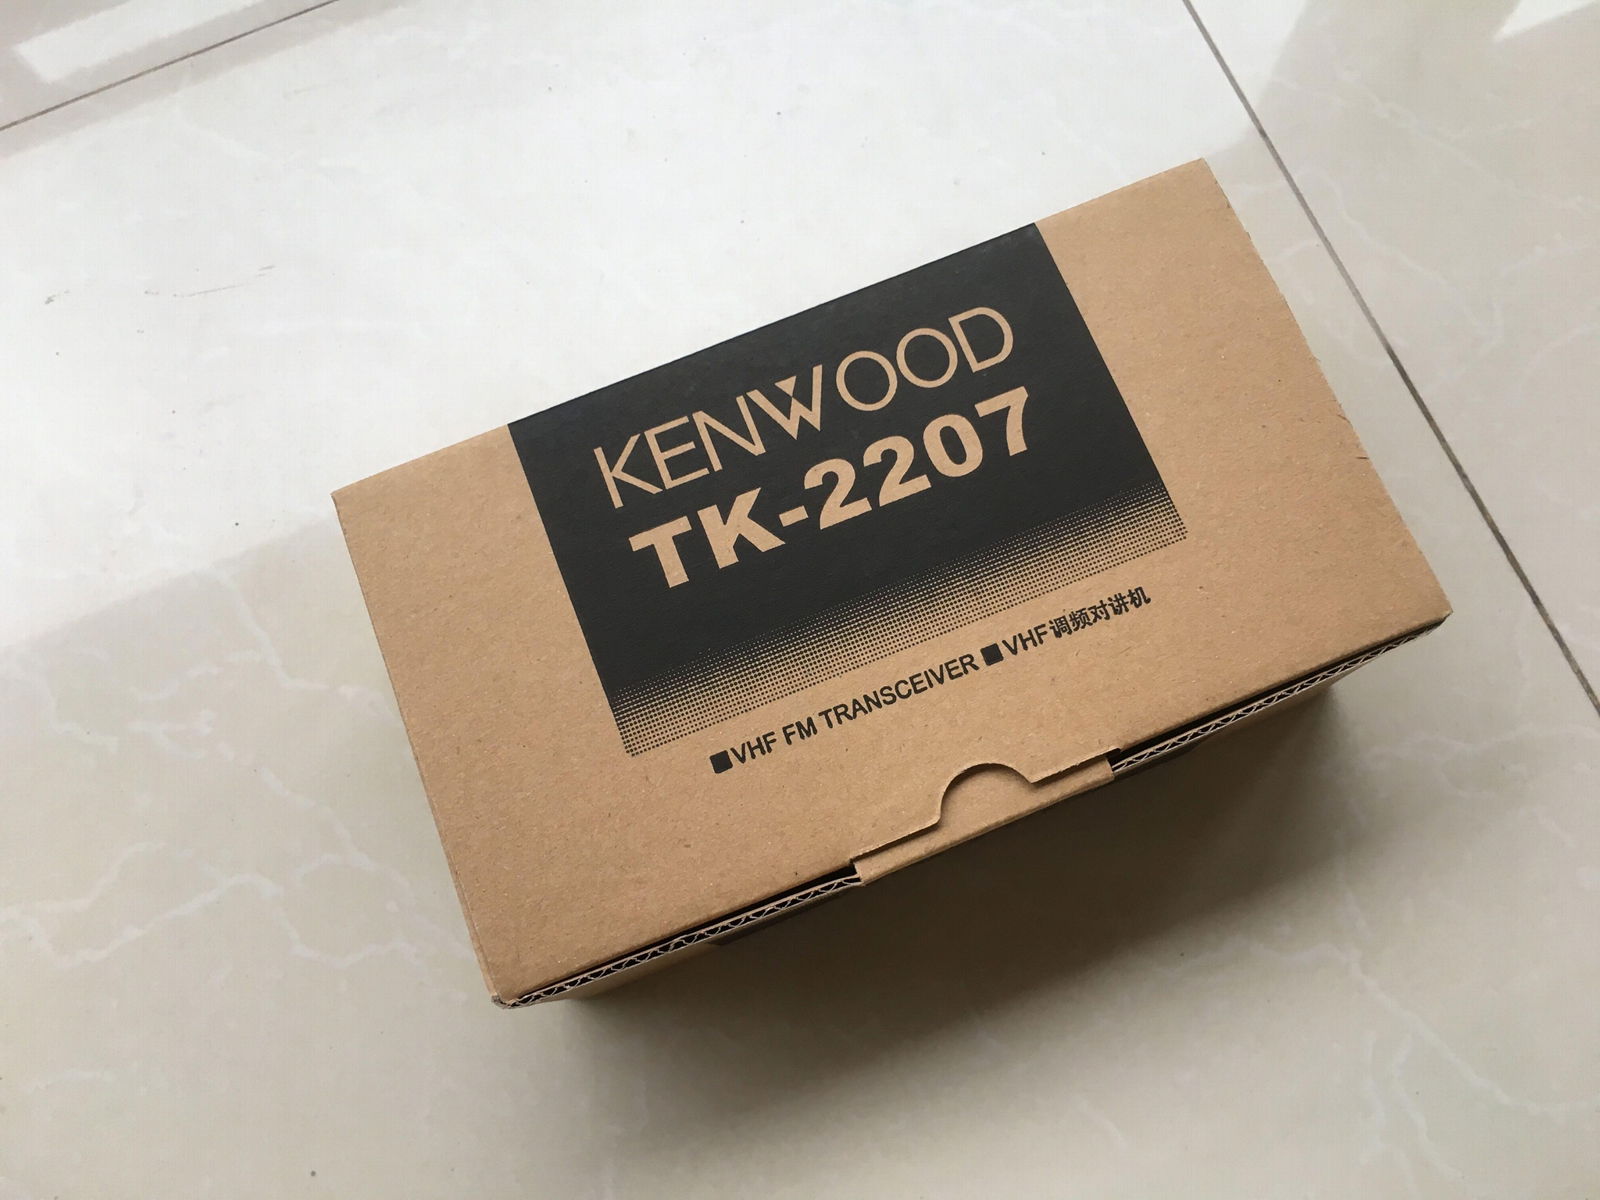 Kenwood TK2207 two way radio